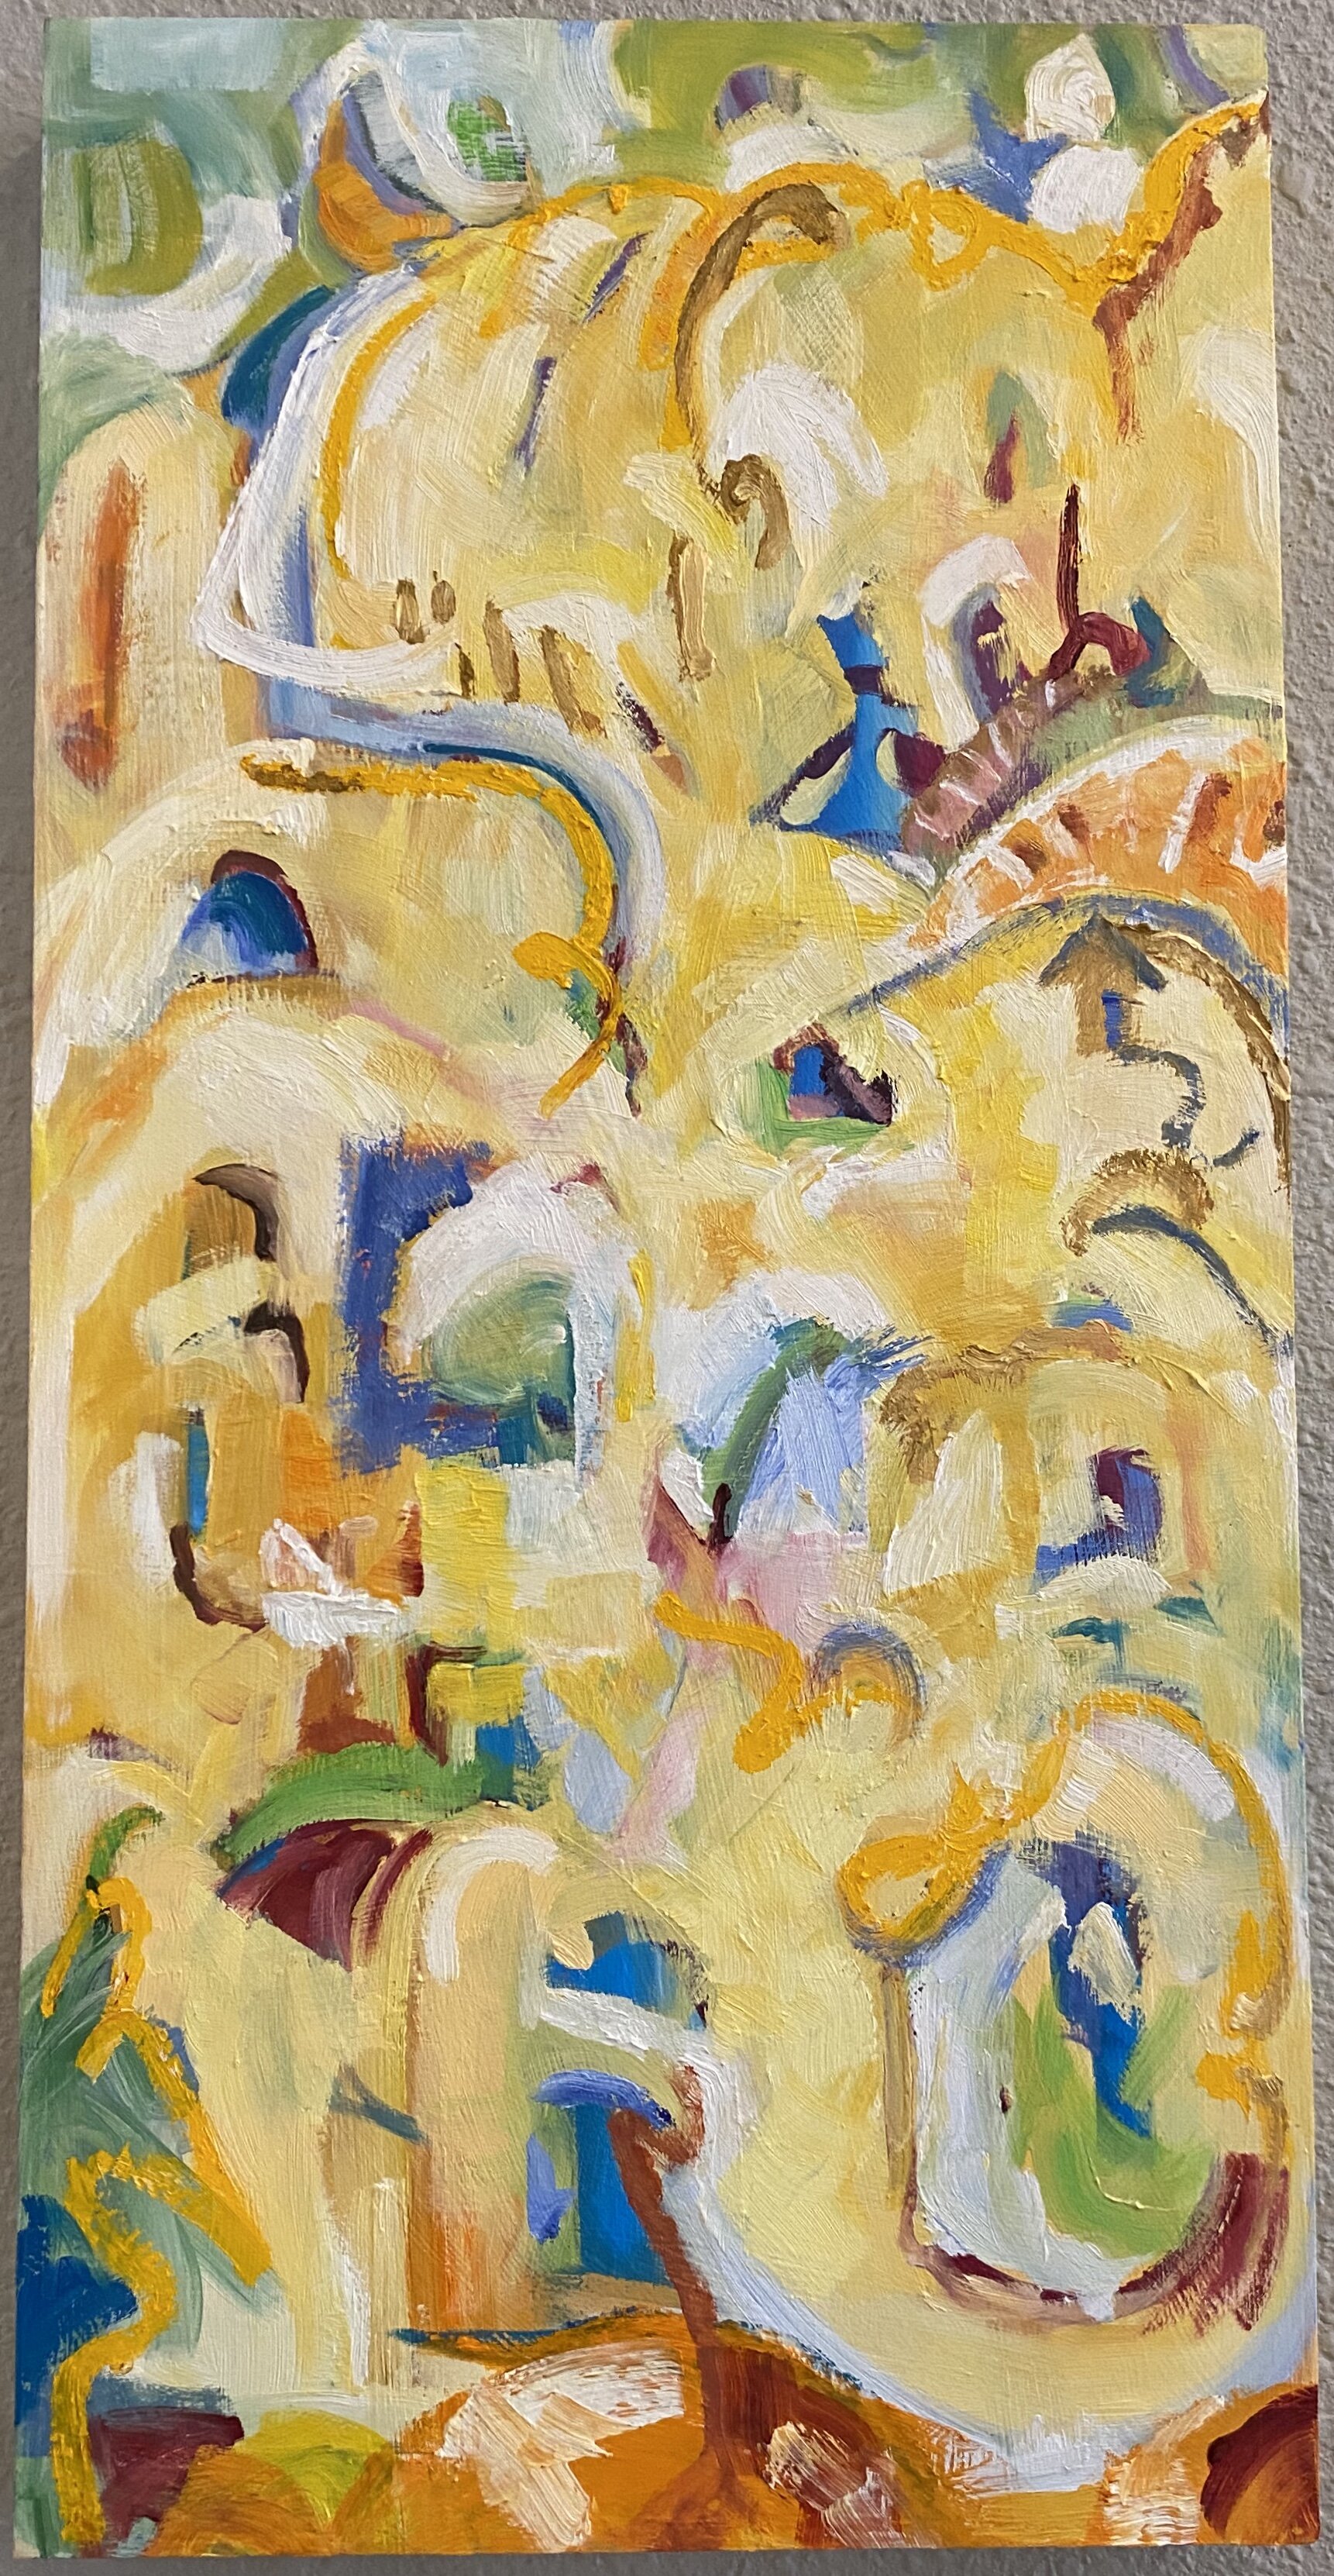 "Village", oil on wood panel, 24 x 12", $400